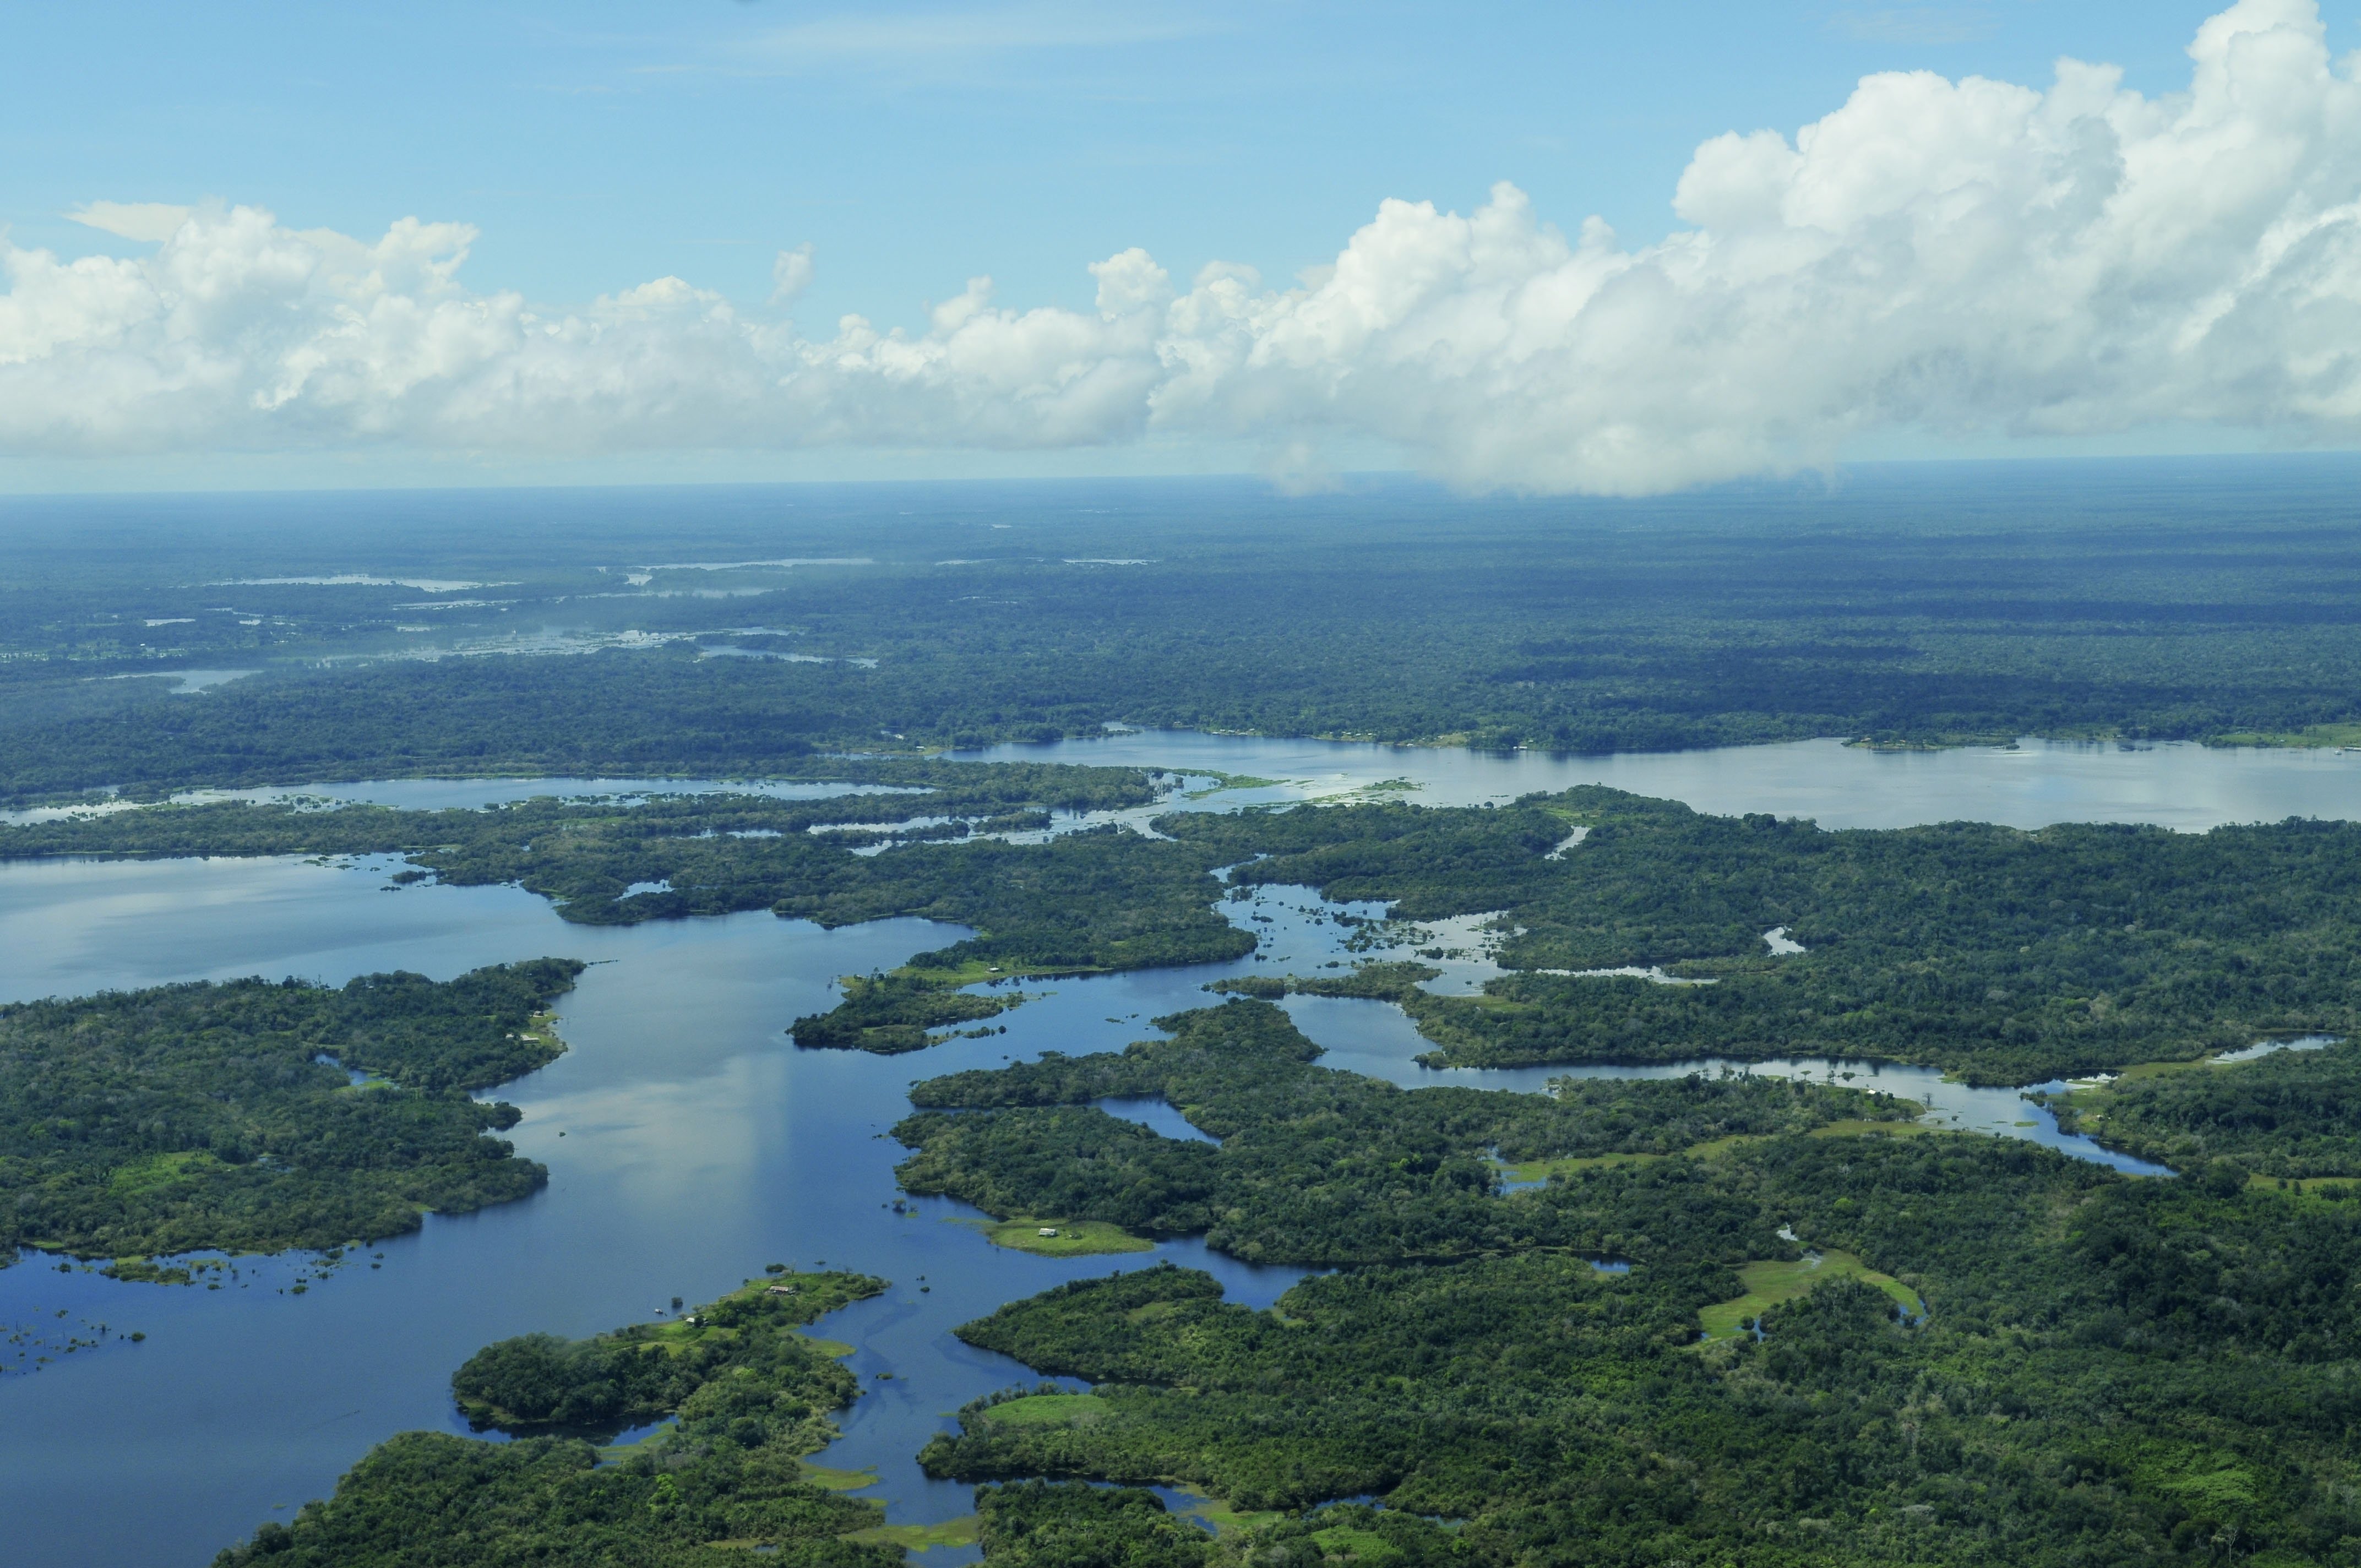 Самая большая по площади река южной америки. Река Амазонка Ориноко. Амазонка река Укаяли. Южная Америка Амазонская низменность. Амазонка Укаяли Мараньон.